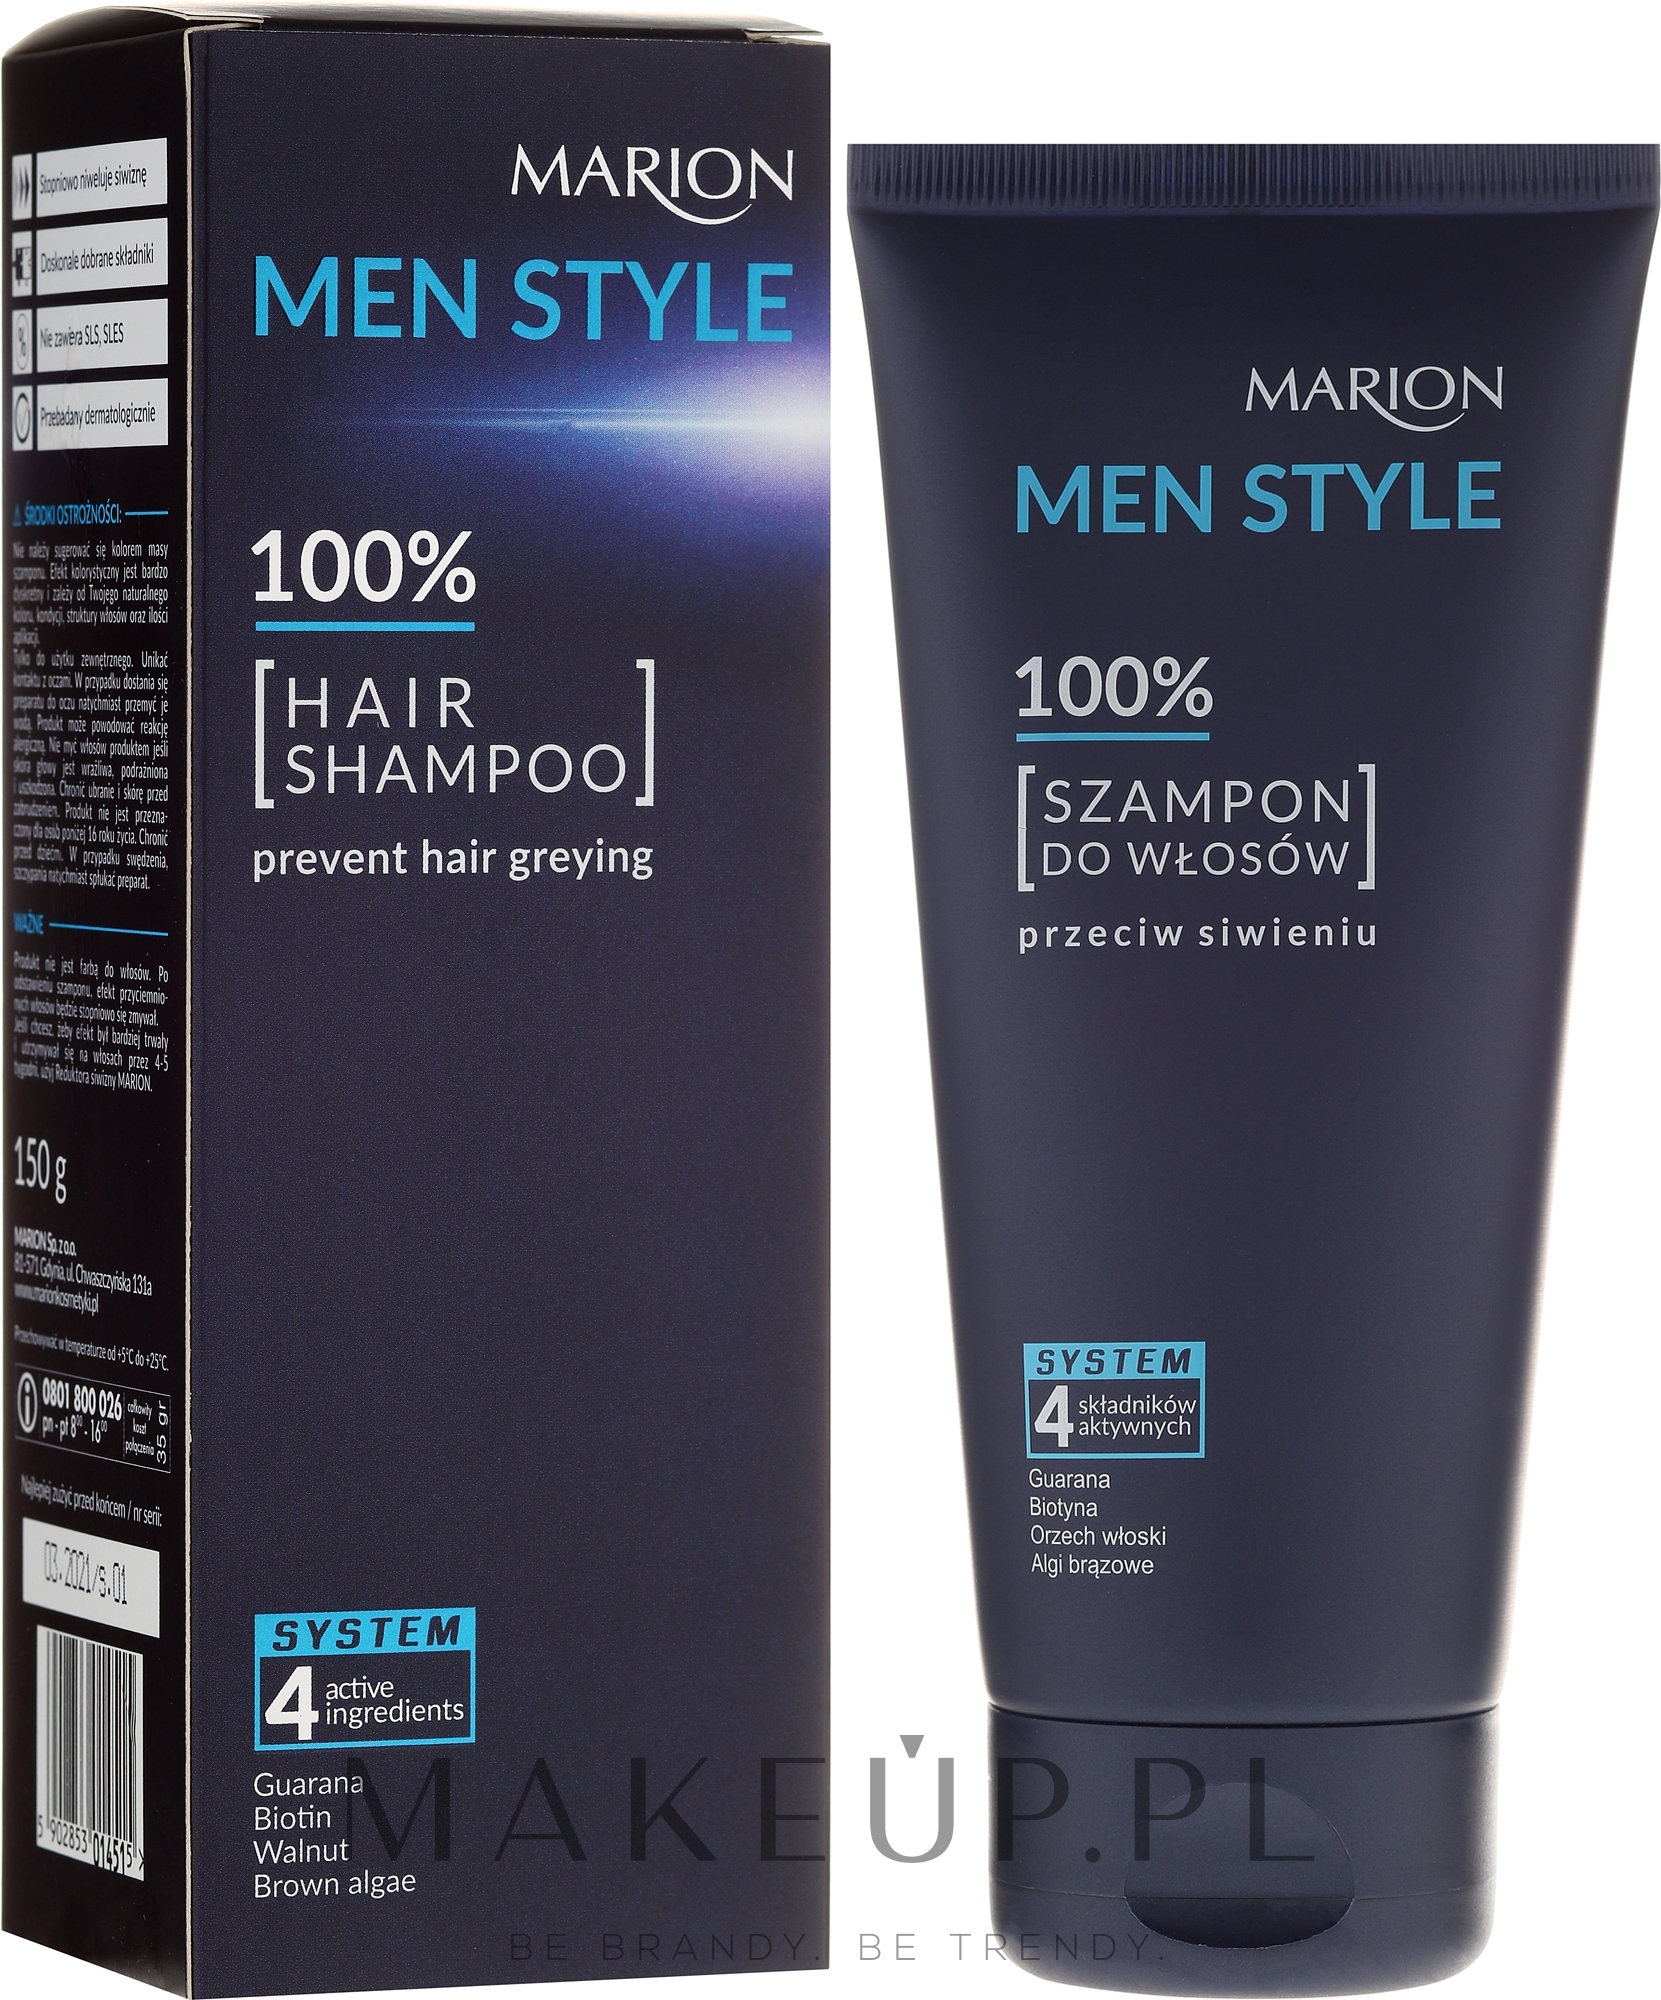 men style 100 szampon do włosów przeciw siwieniu